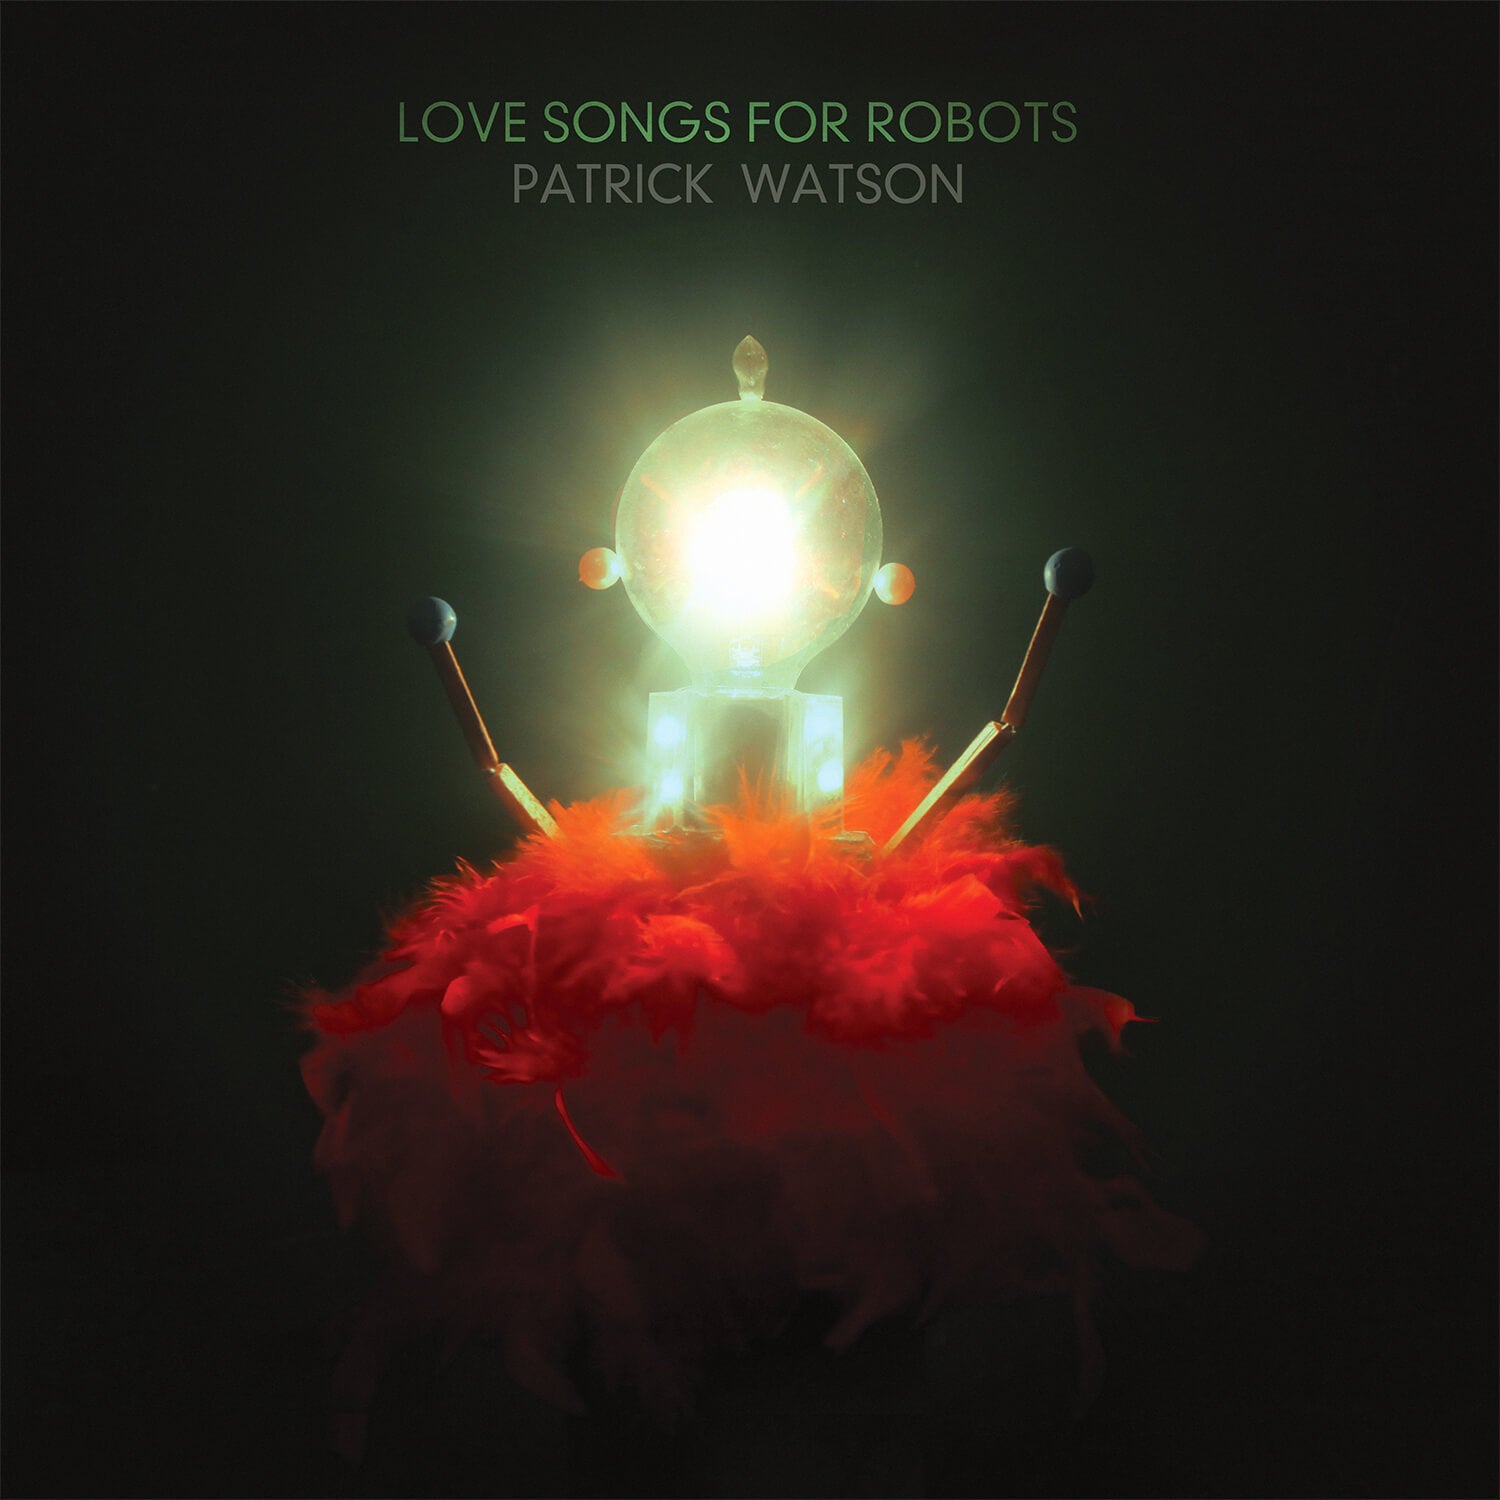 Téléchargement - Love Songs for Robots